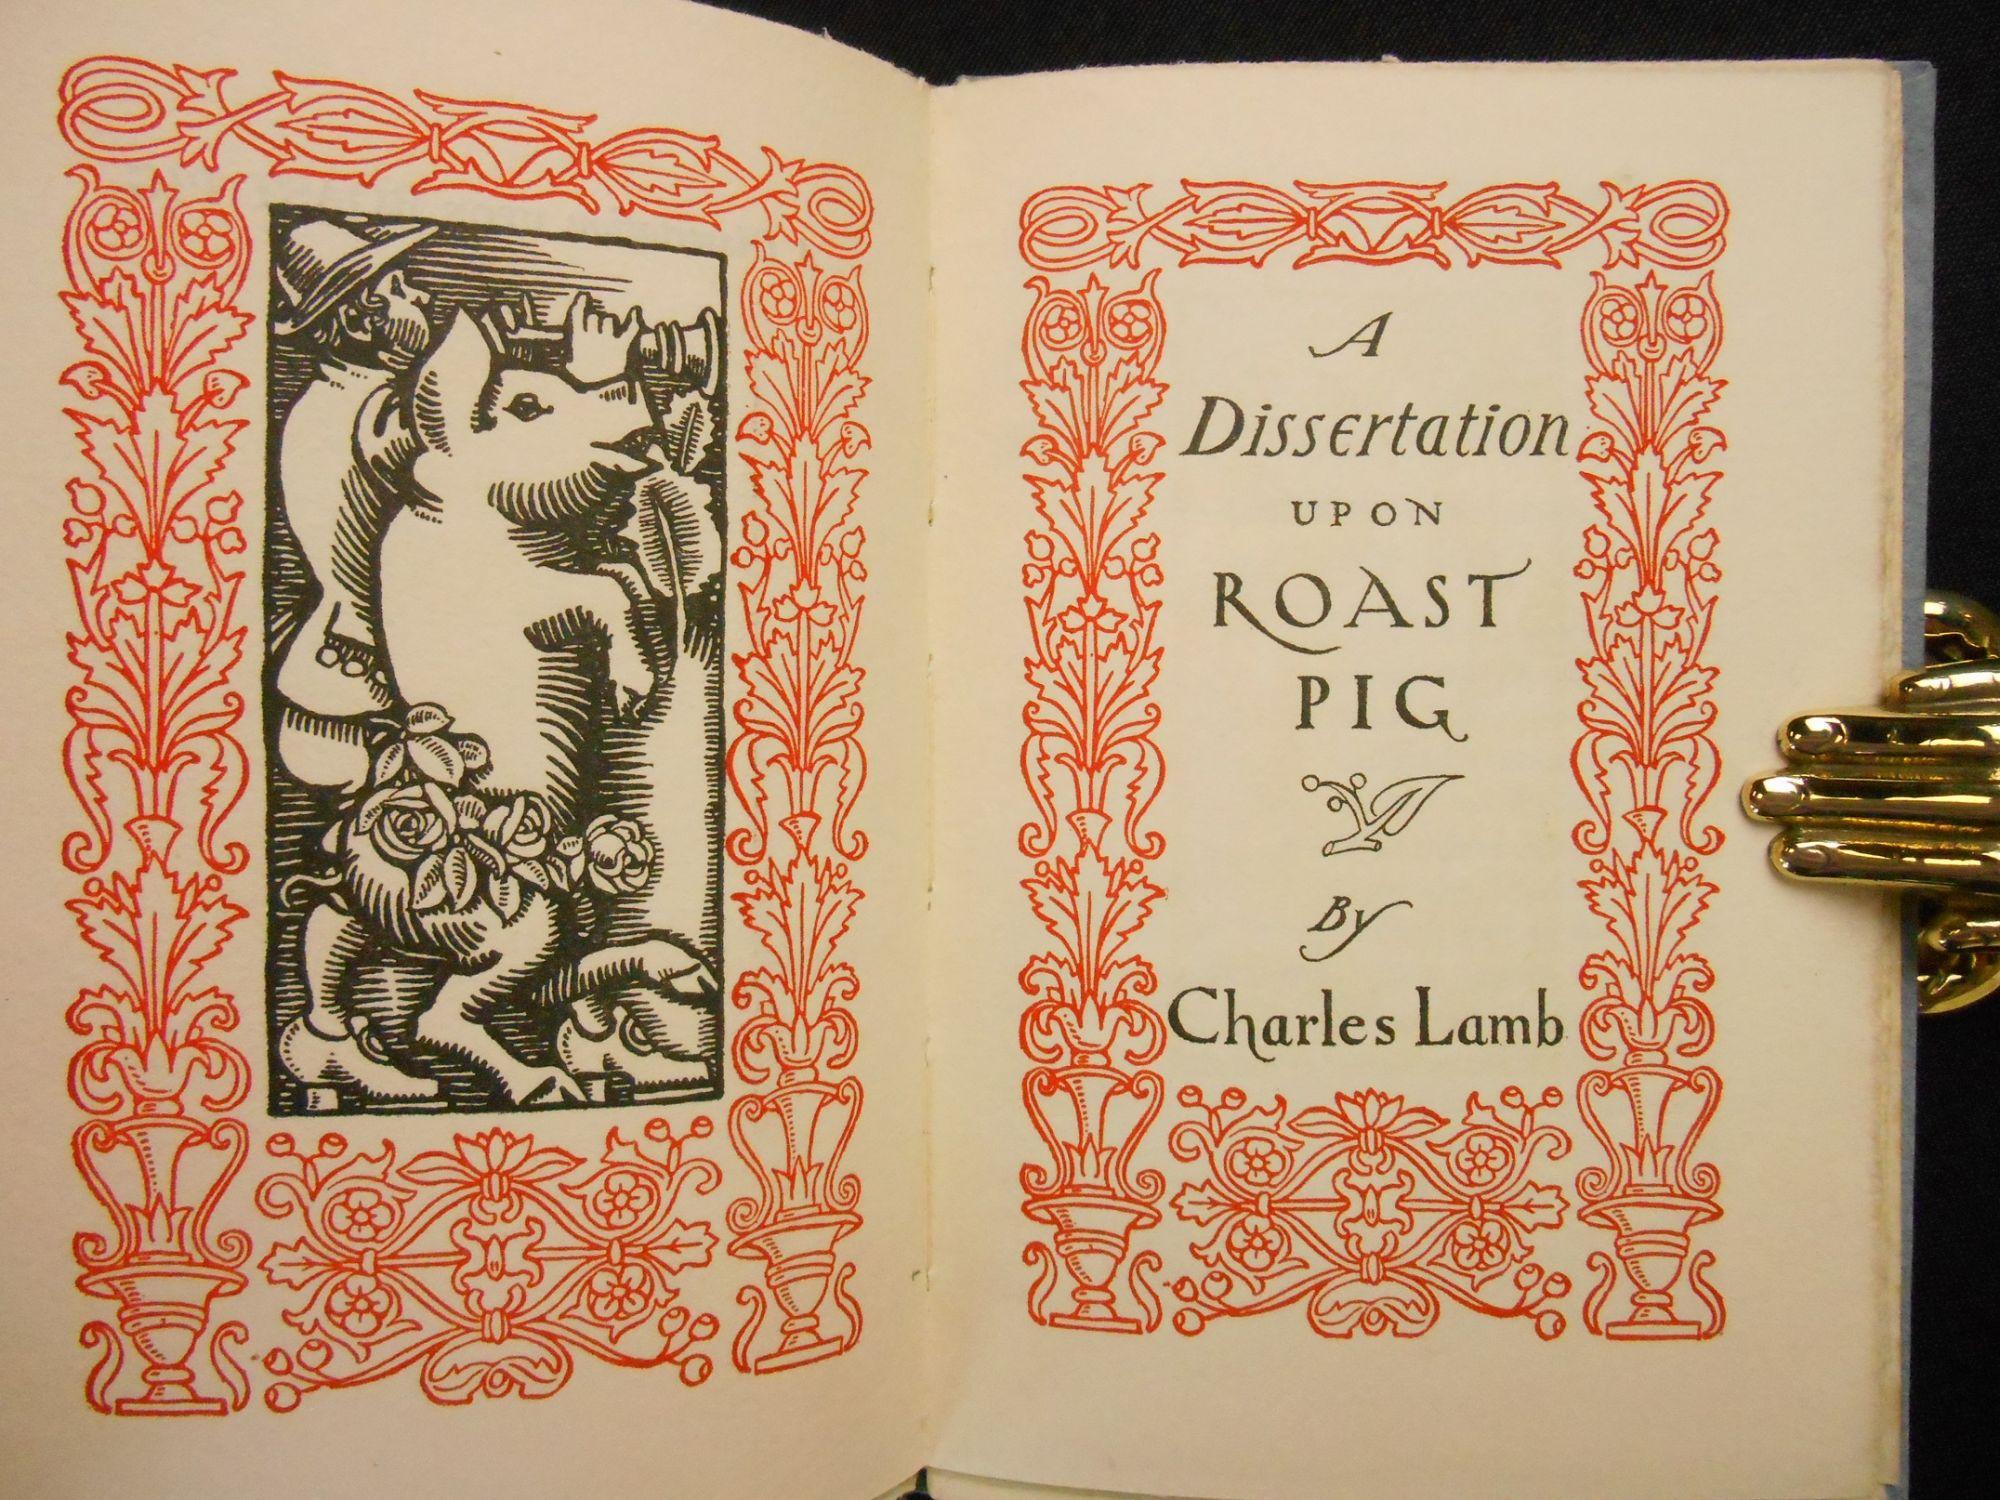 Charles lamb dissertation on roast pig